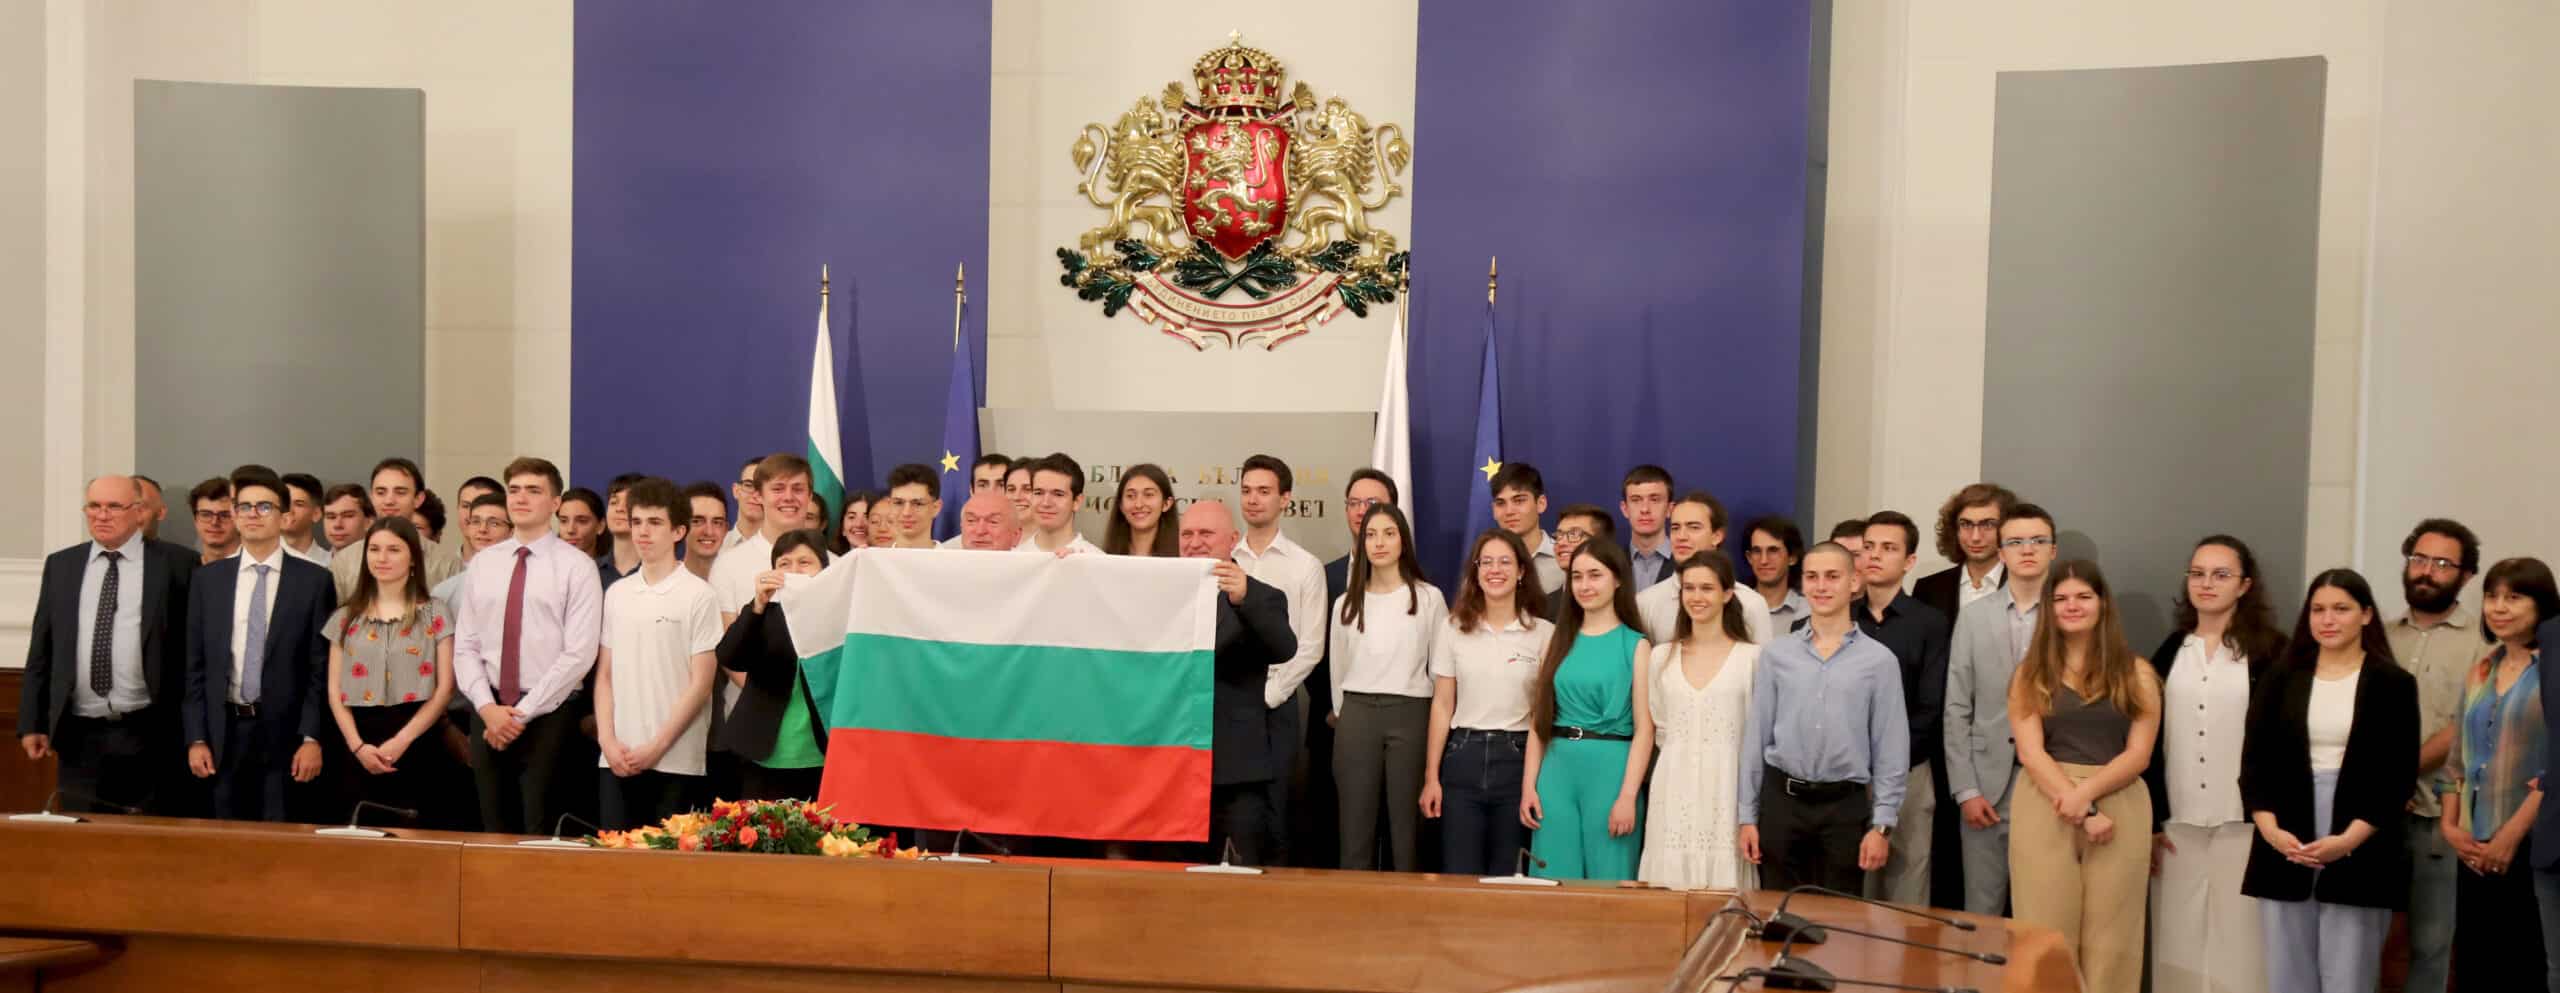 Вие сте гордост за България! Надявам се в този глобален